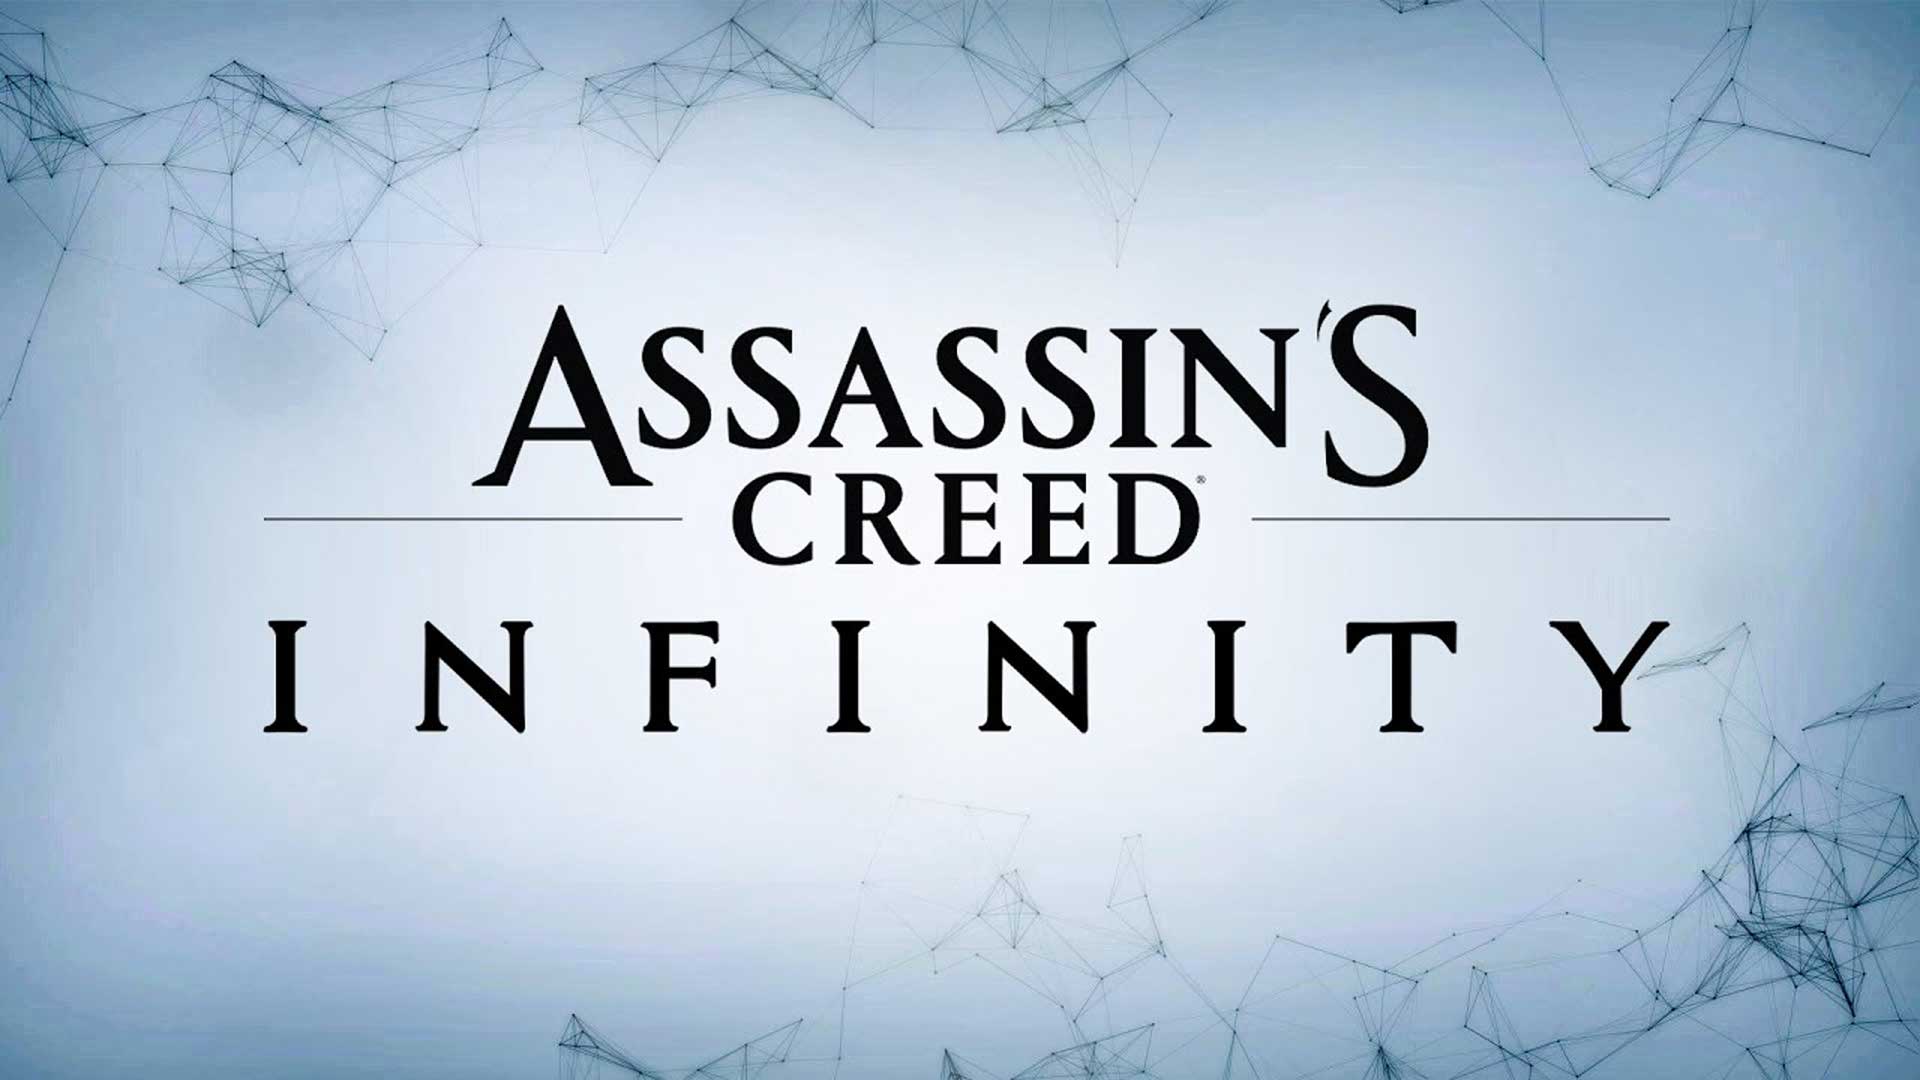 بازی Assassin’s Creed Infinity بخش داستانی با کیفیتی خواهد داشت